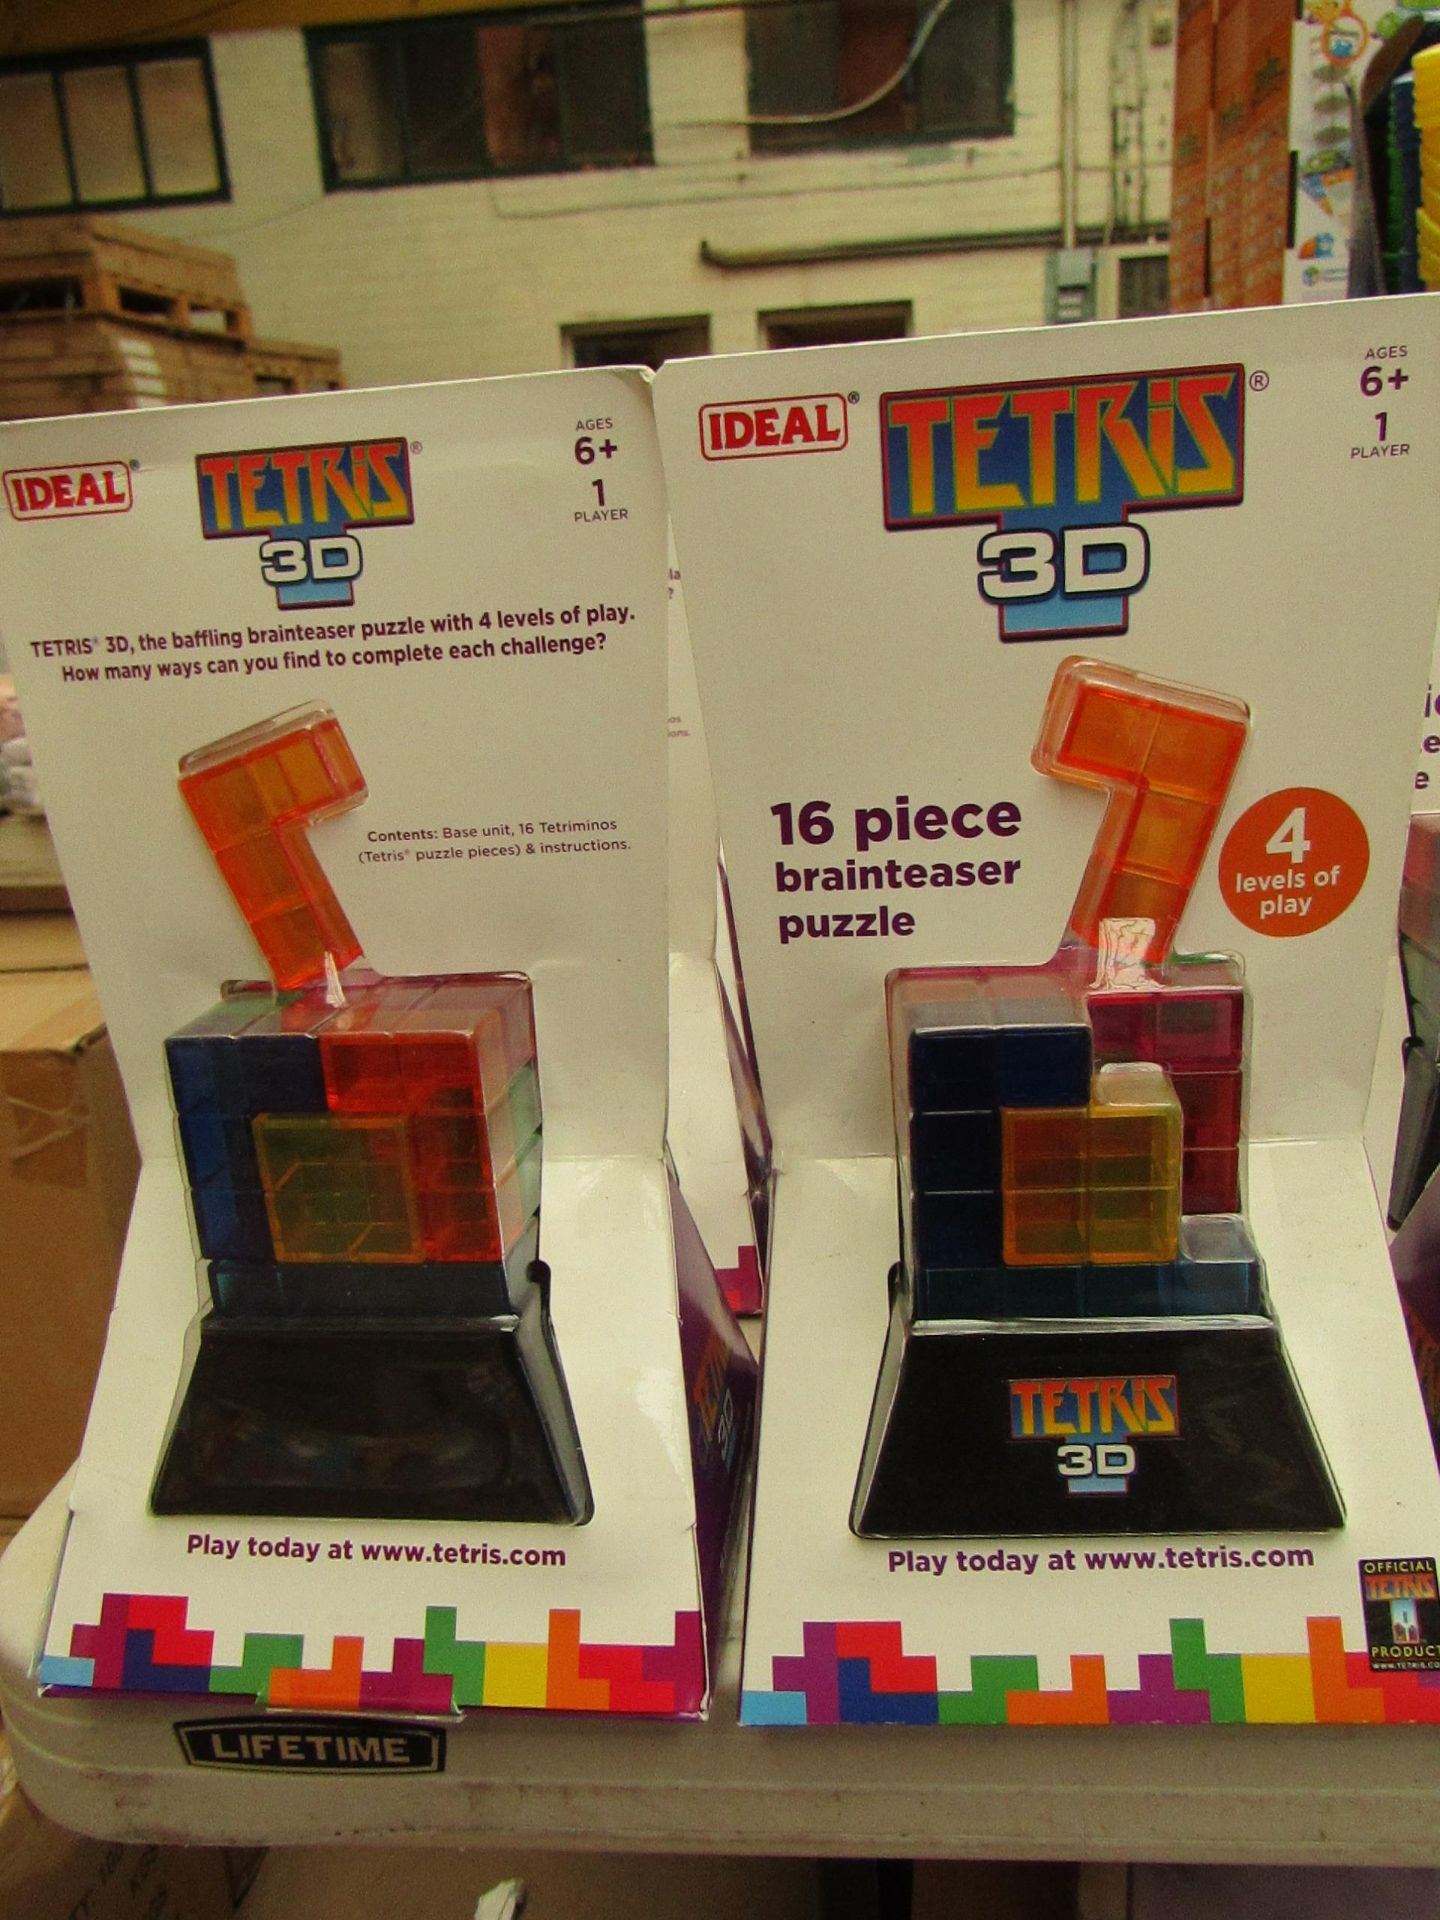 2 x Ideal Tetris 3D 16 Piece Brainteasers new & packaged